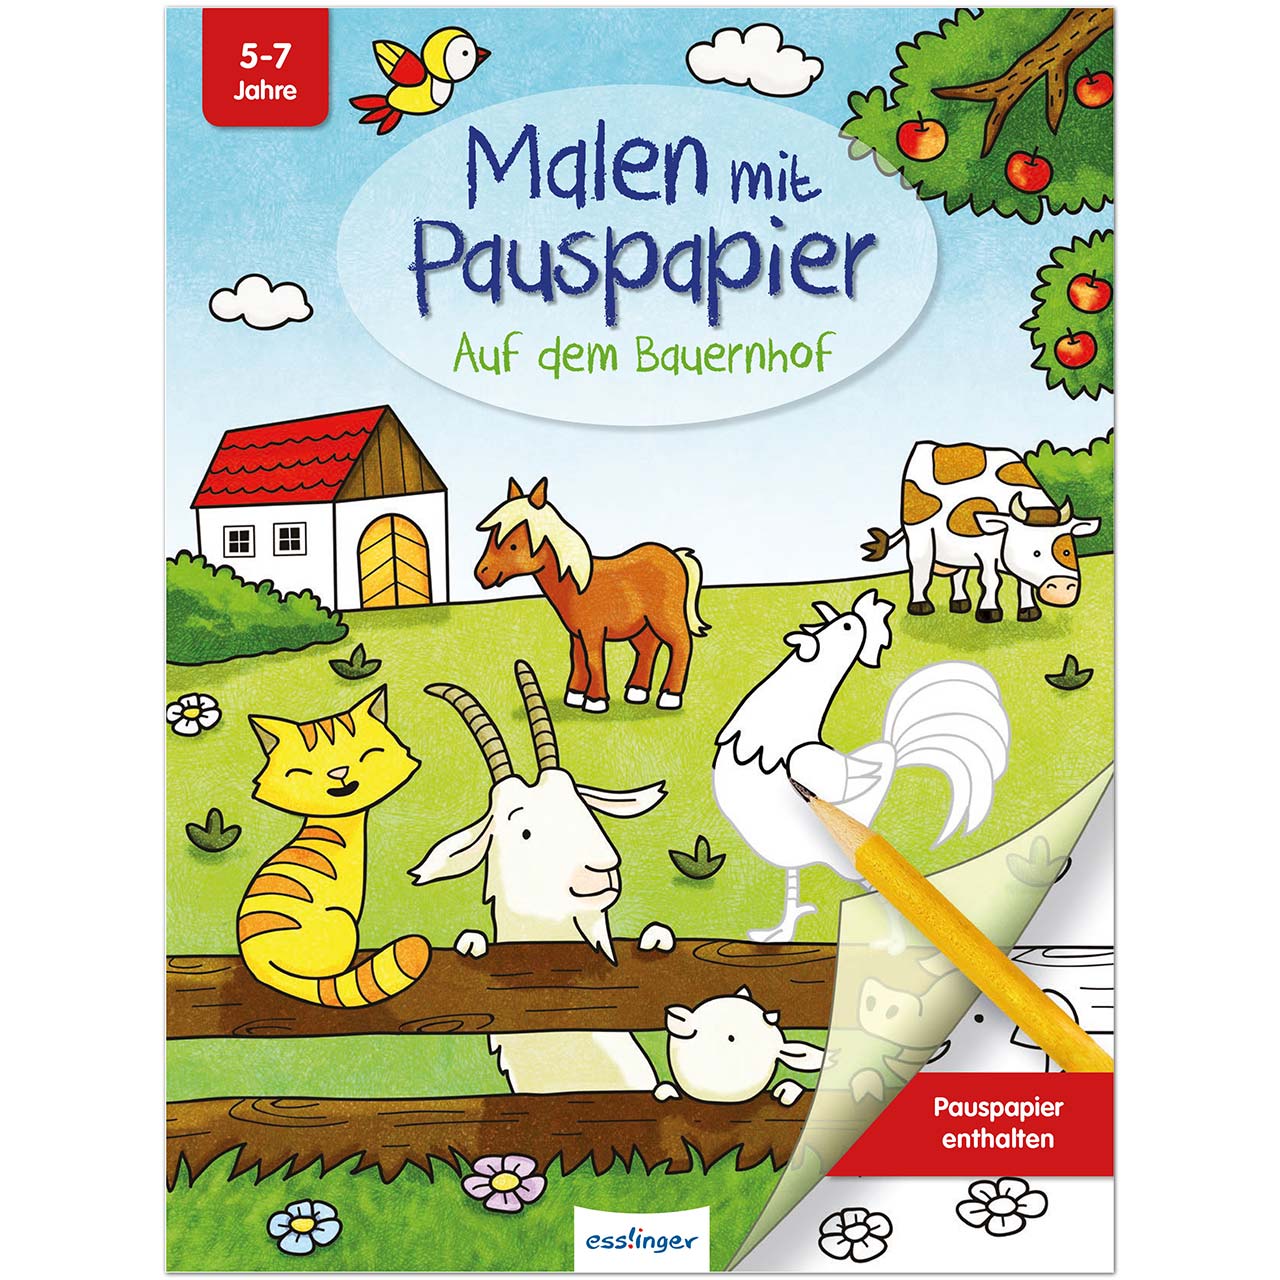 Malbuch mit Pauspapier für Kinder ab 5 Jahre - Bauernhof